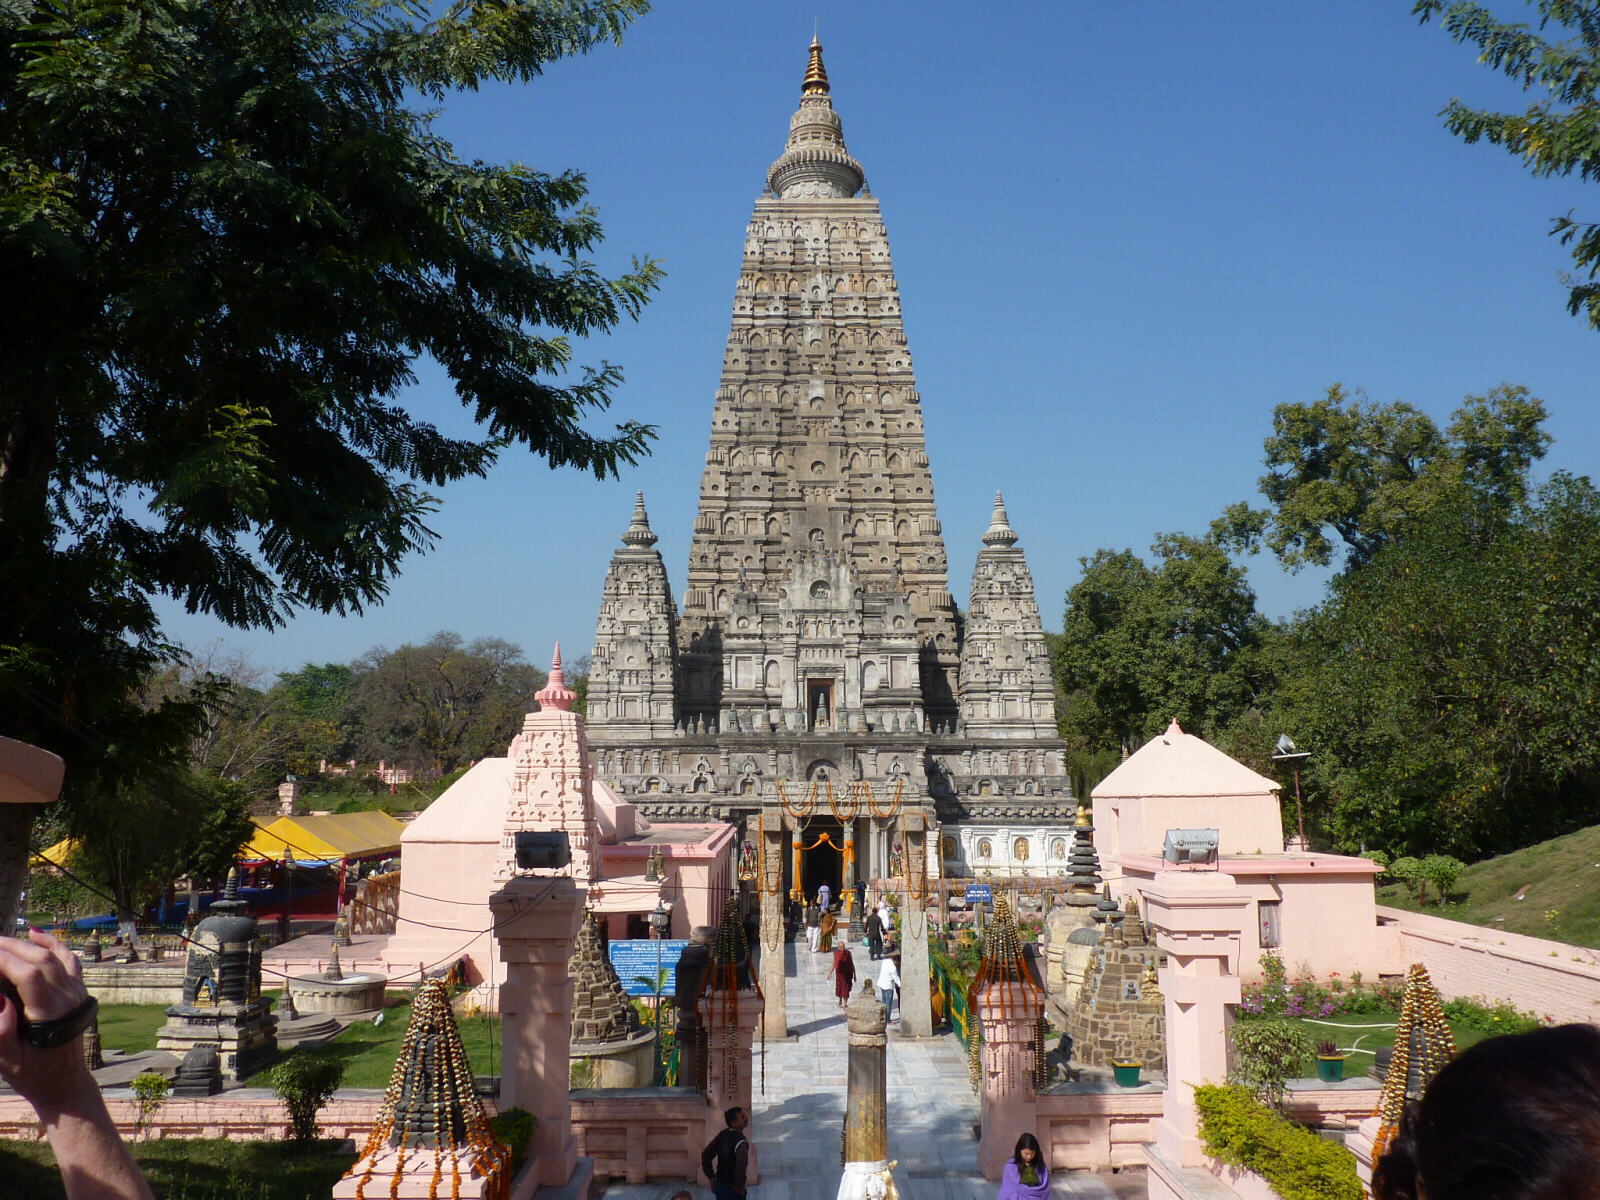 The Mahabodi Temple in Bodhgaya, India